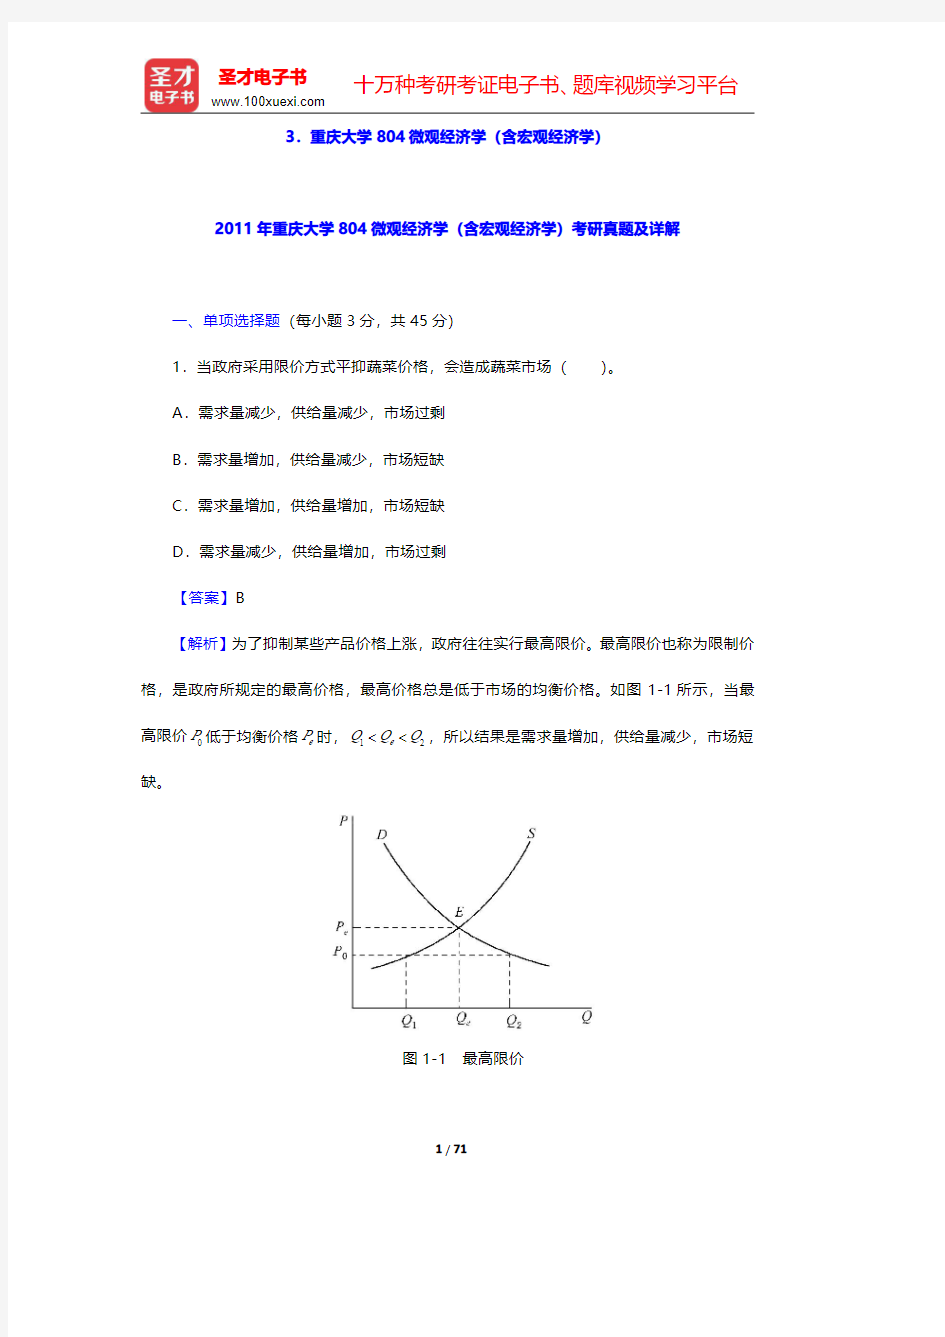 重庆大学804微观经济学(含宏观经济学)【圣才出品】